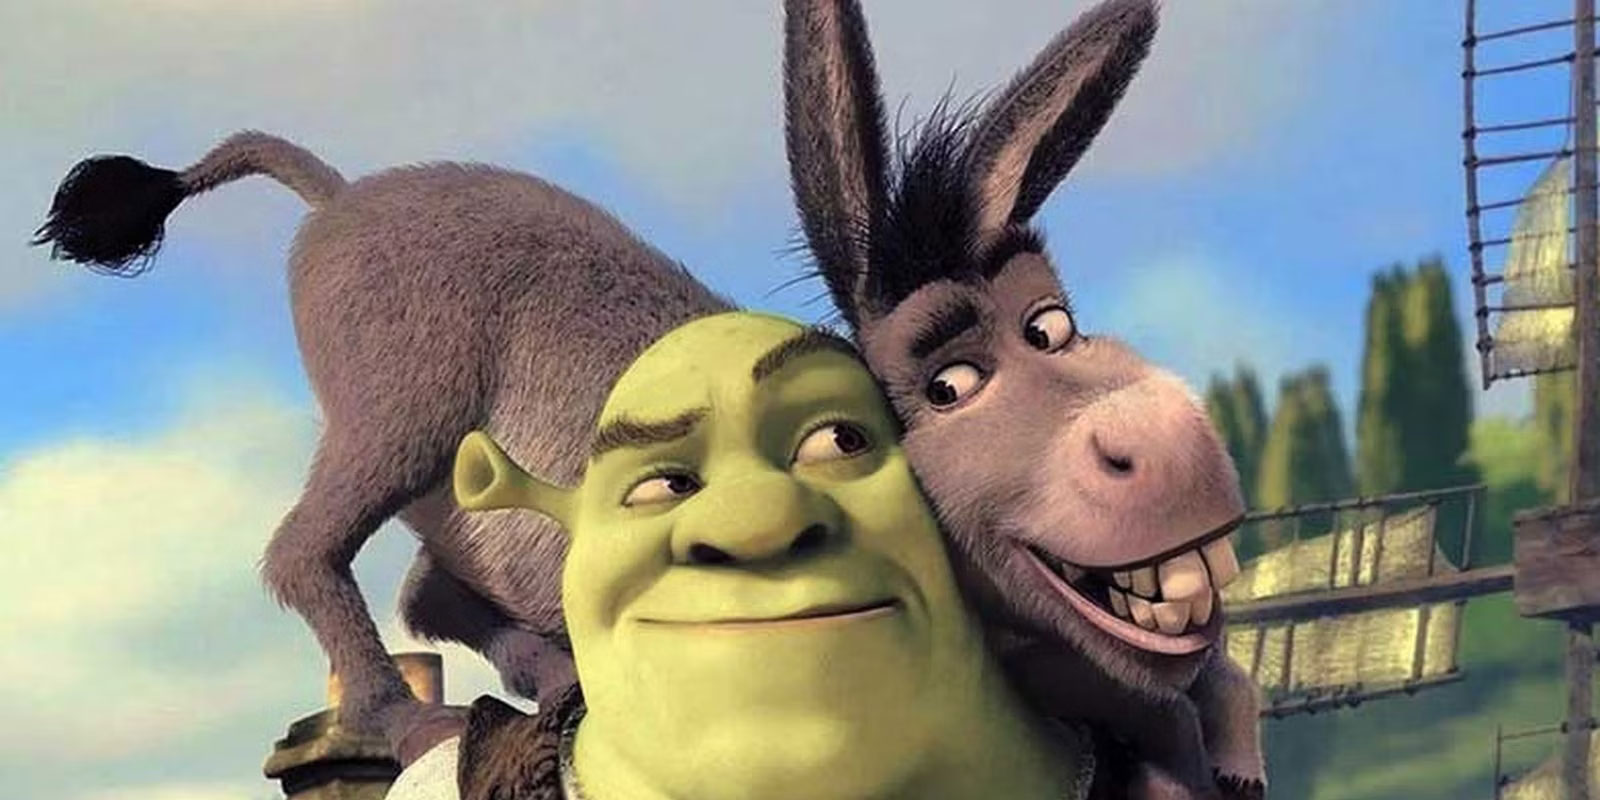 Eddie Murphy talks ‘Puss in Boots’ vs ‘Donkey’ reprisal in ‘Shrek’: ‘I’d do it in 2 seconds’